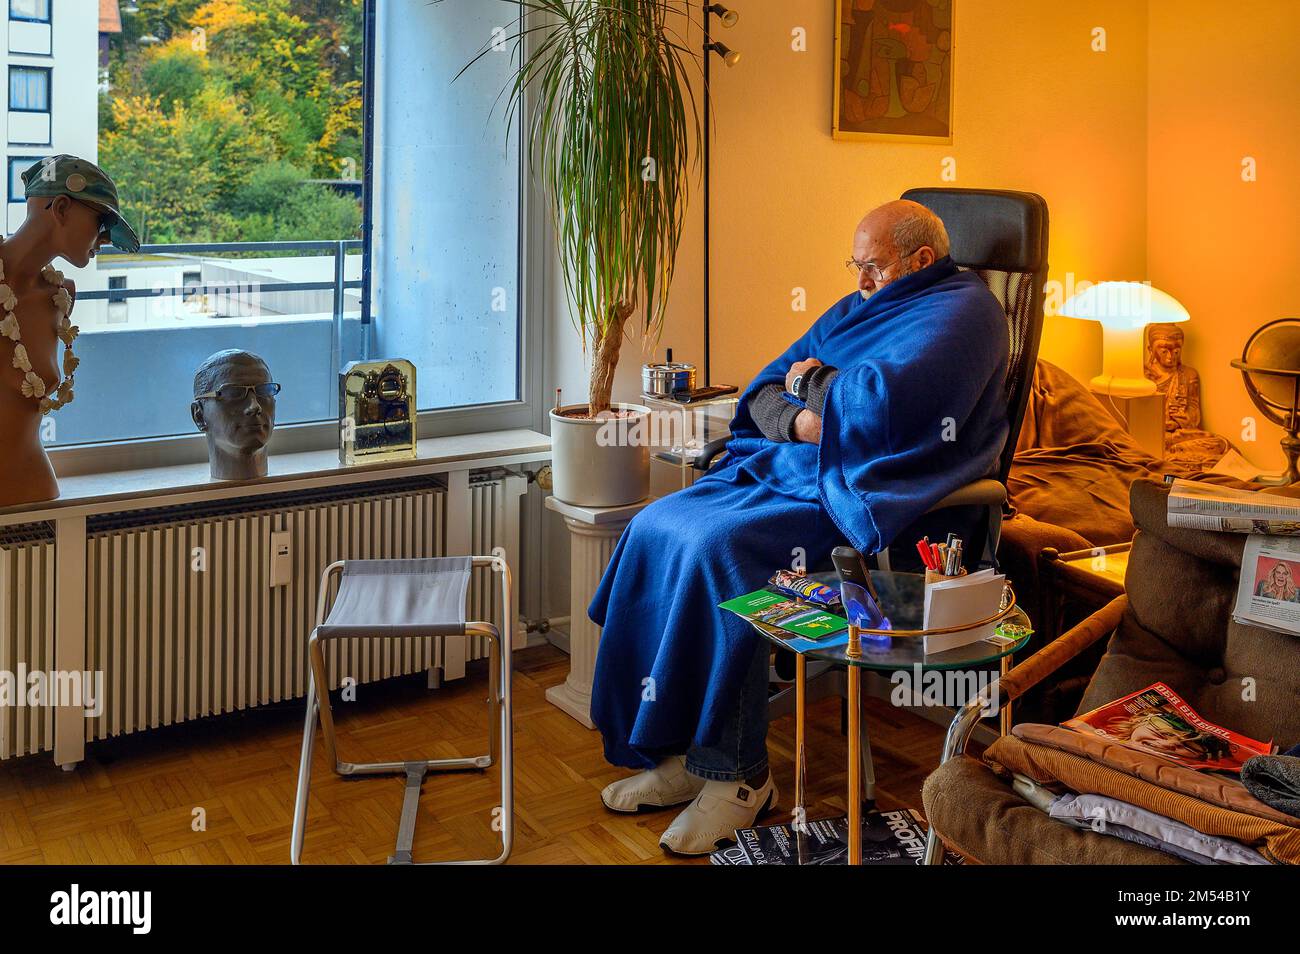 Vieil homme enveloppé dans des couvertures, économiser de l'énergie, geler à cause de Poutine, économiser les coûts de chauffage, basse température de la pièce, Bavière, Allemagne Banque D'Images